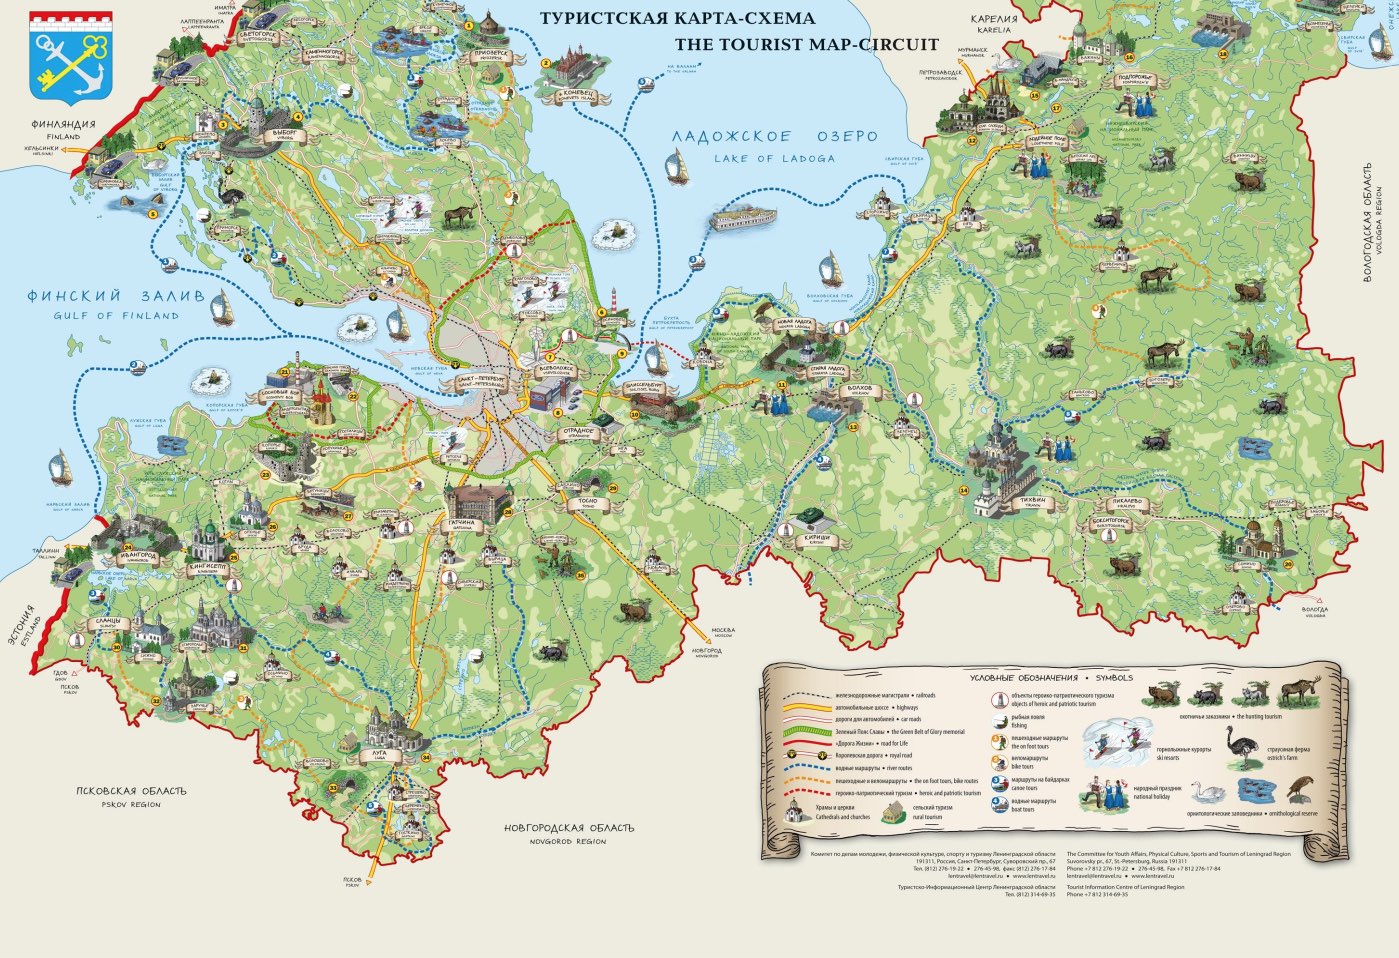 Leningrad region - tourist map - High resolution